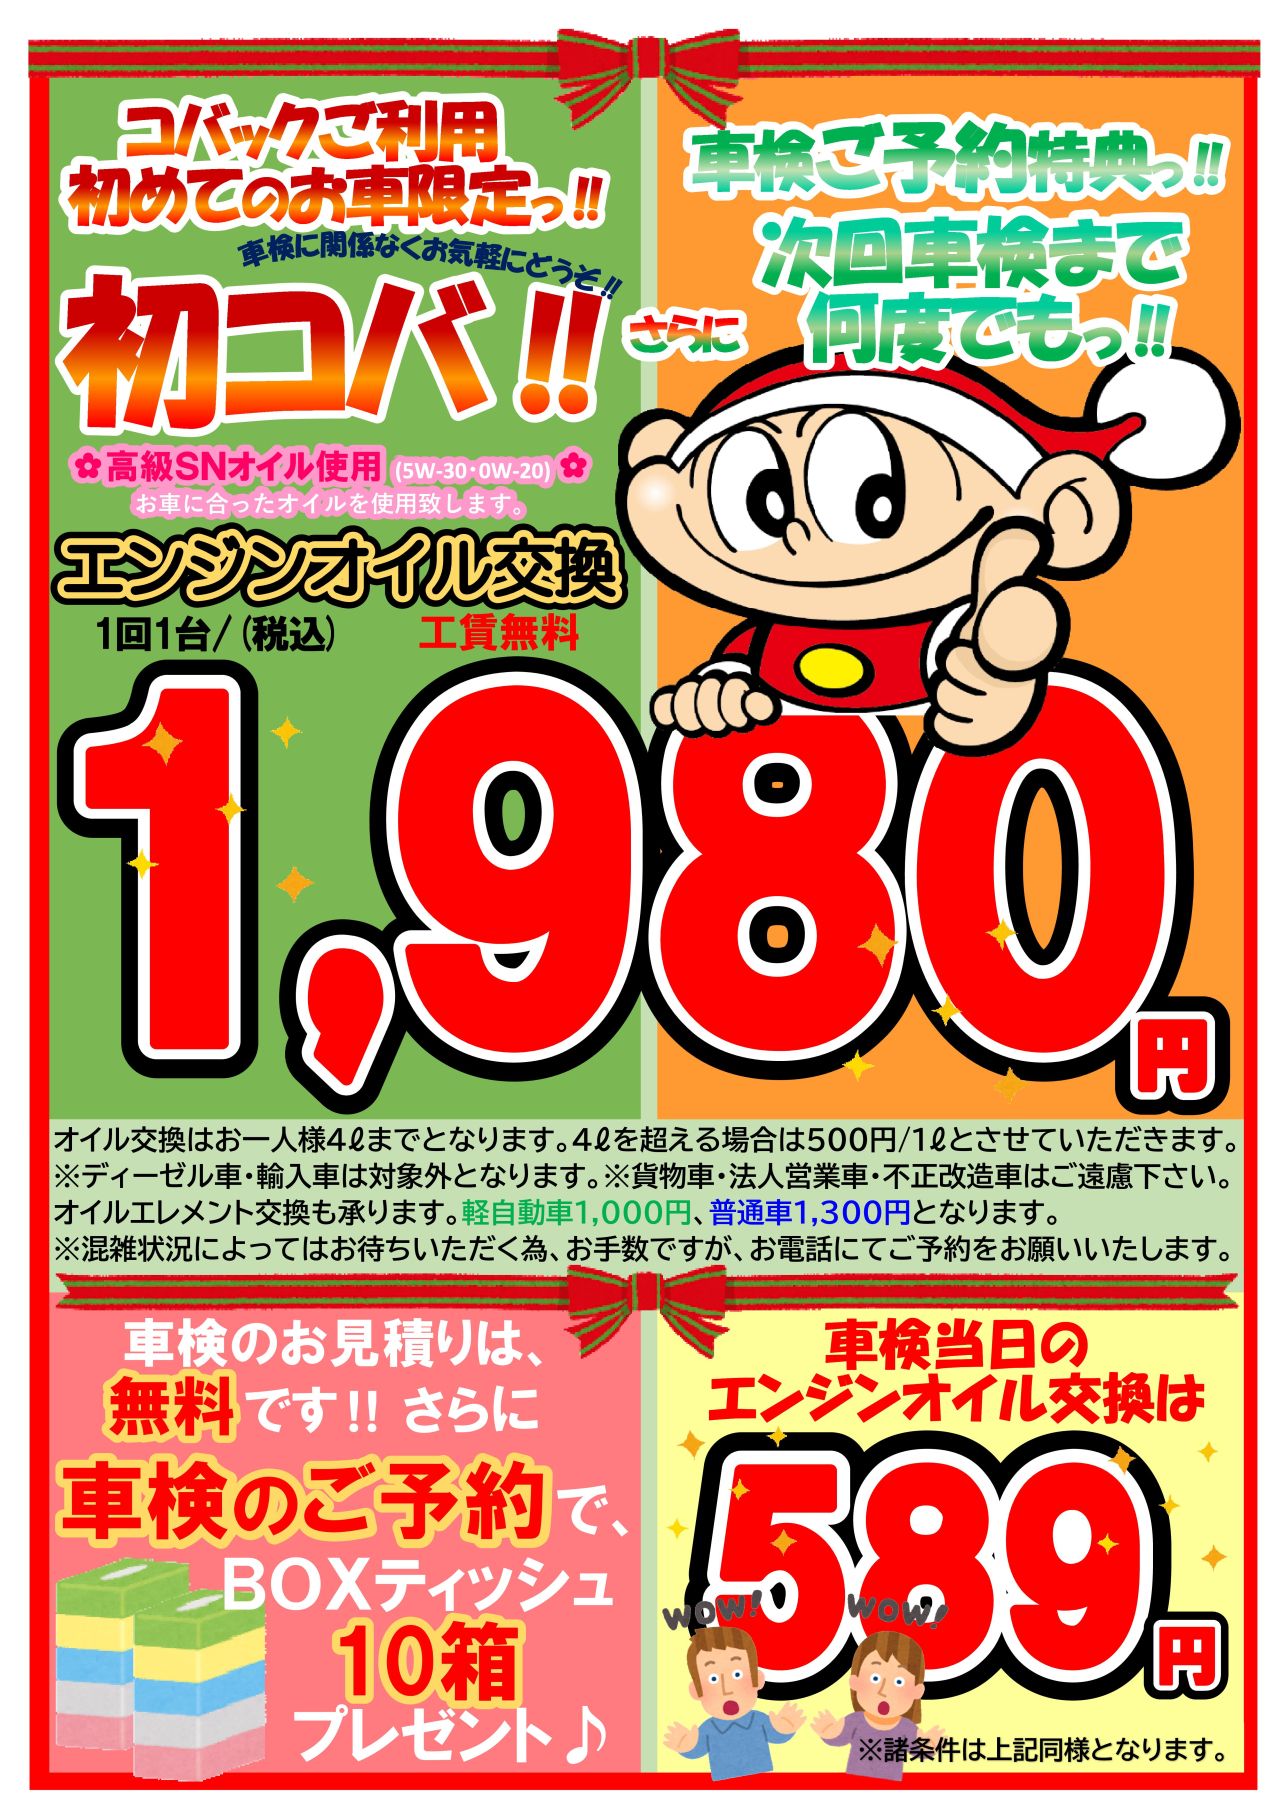 オイル交換キャンペーン1980円